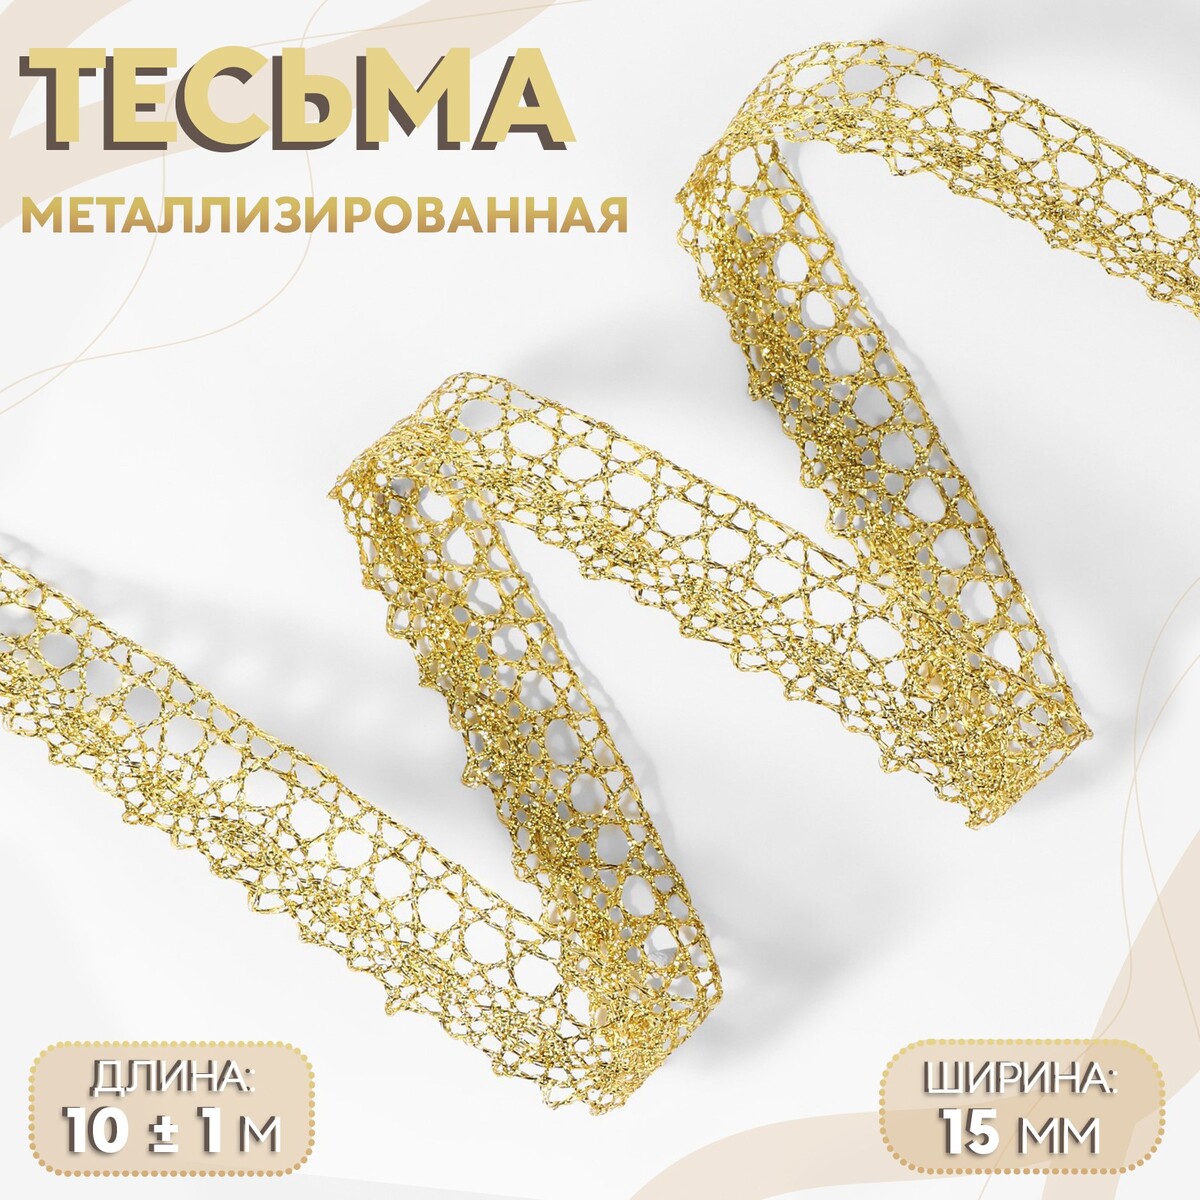 Тесьма декоративная, металлизированная, 10 ± 1 м, 15 мм, цвет золотой тесьма декоративная металлизированная 10 ± 1 м 15 мм серебряный